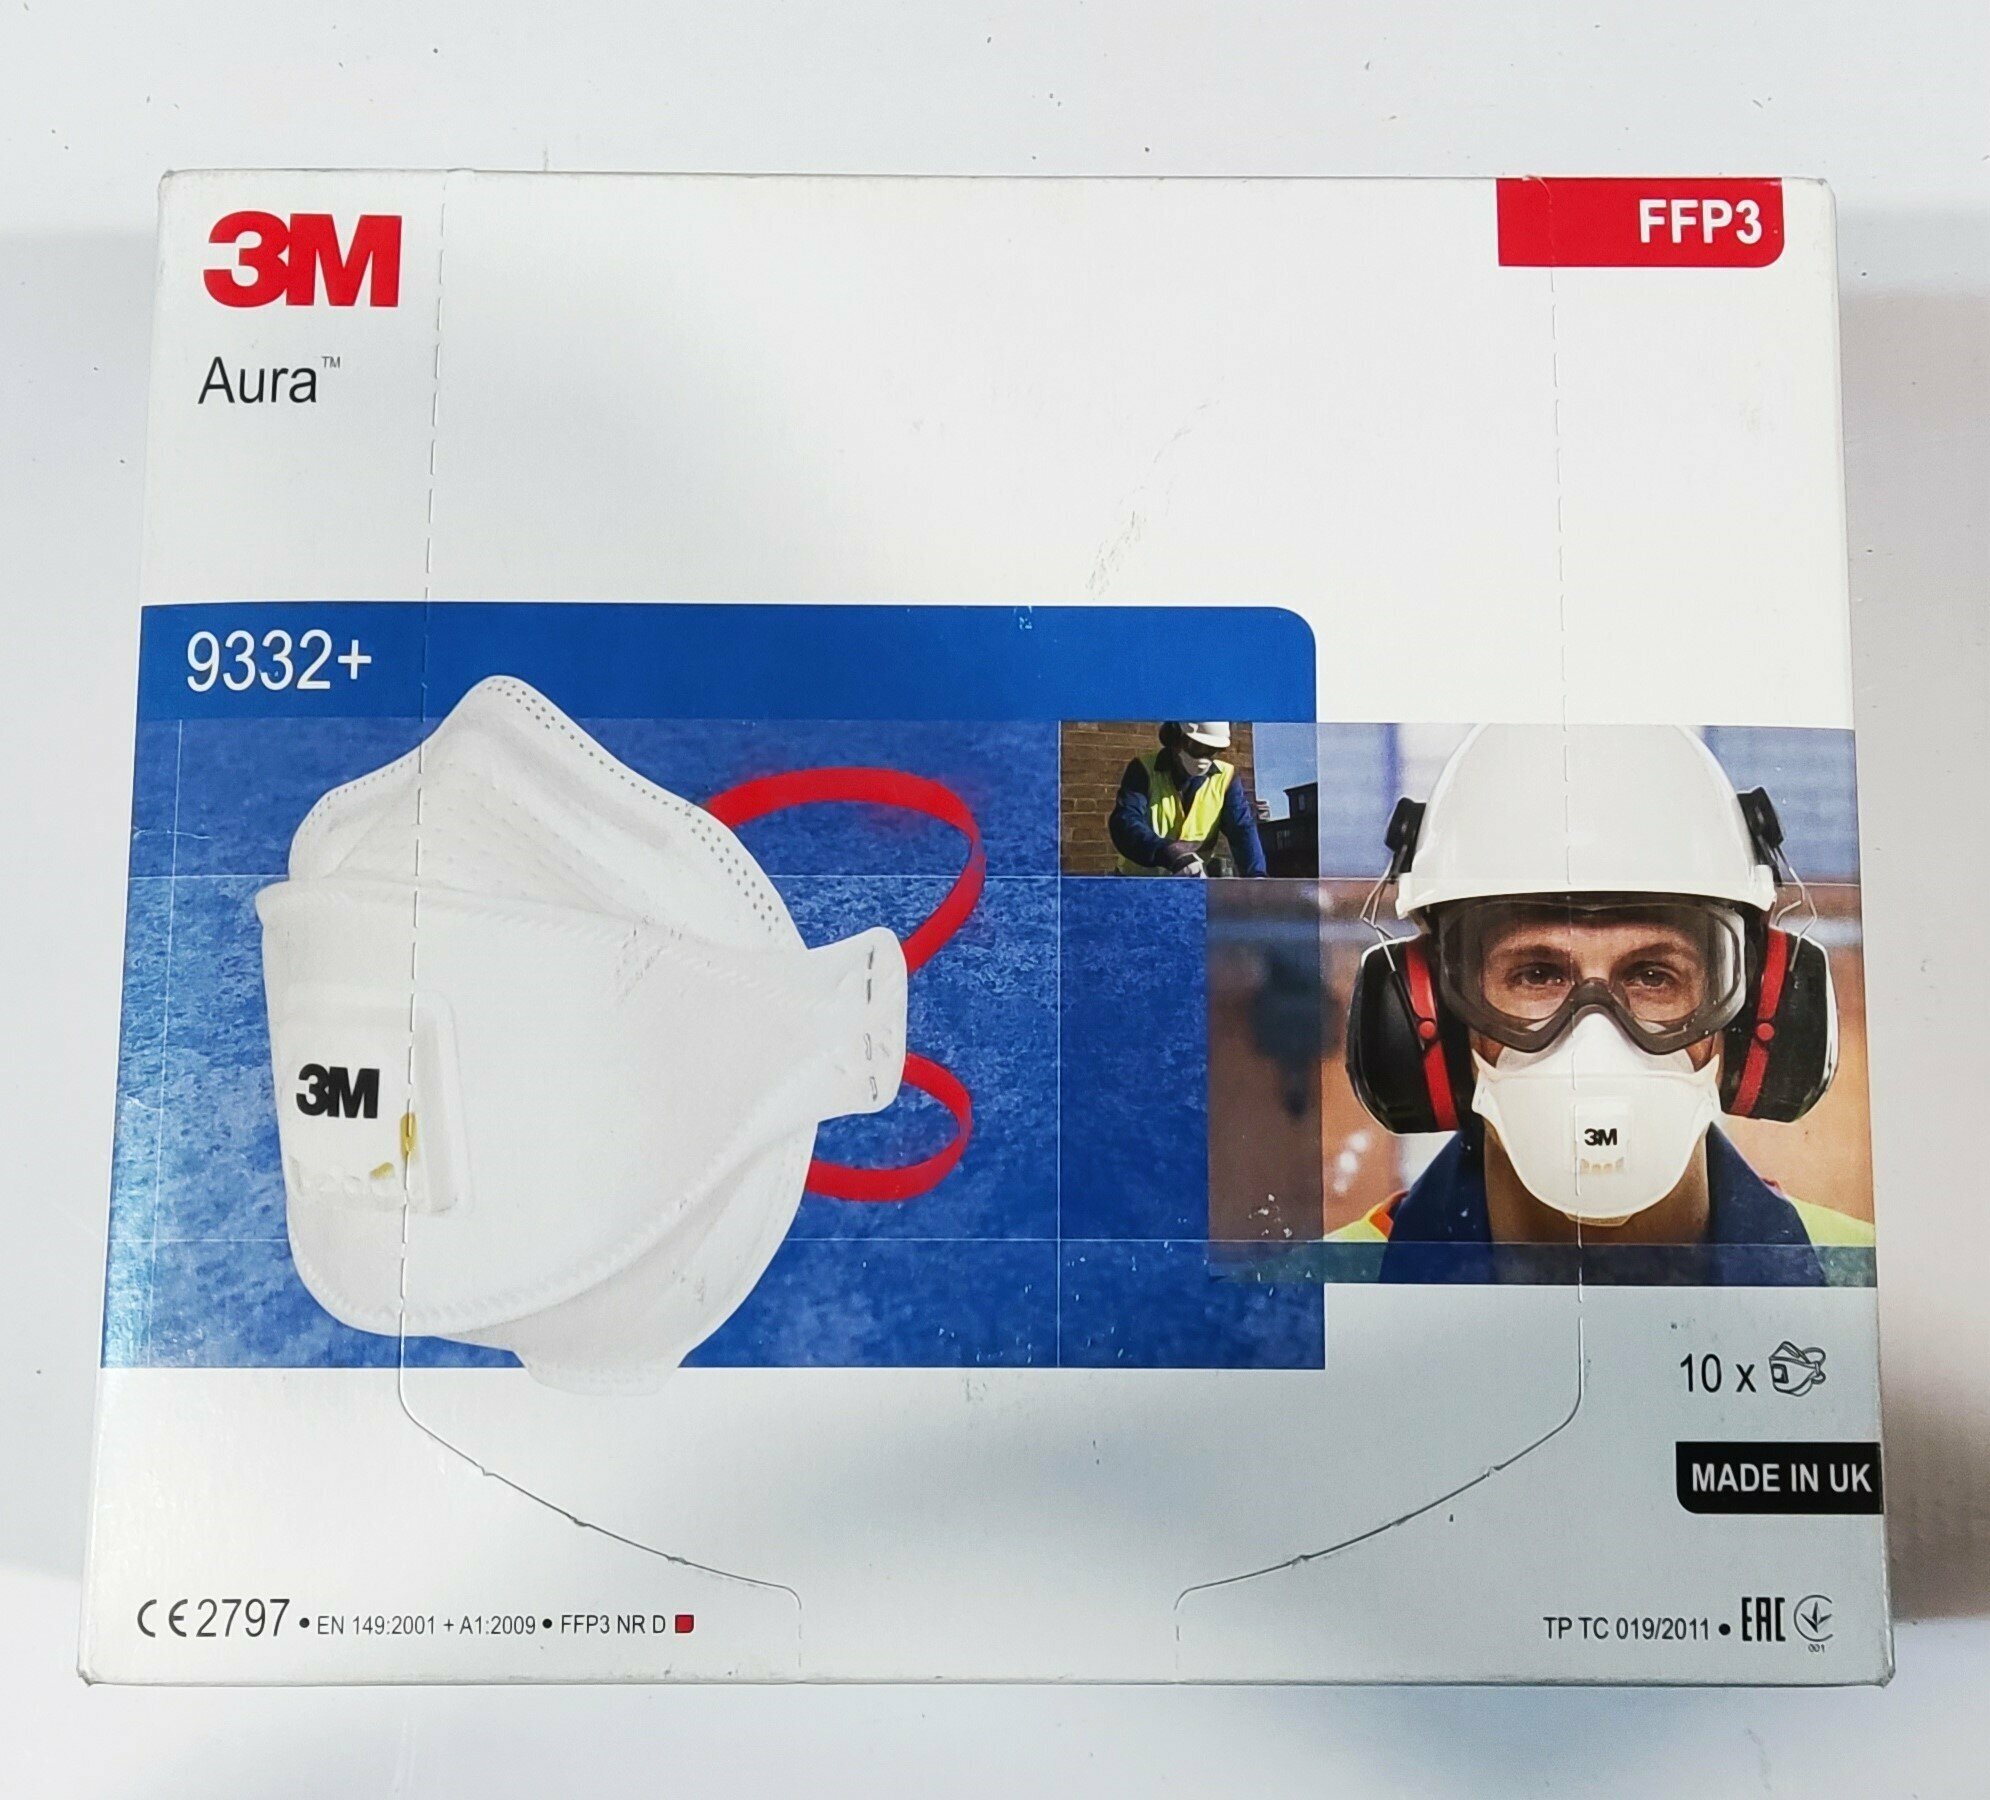 Респиратор для защиты органов дыхания 3М 9332+ Aura с клапаном выдоха класс защиты FFP3